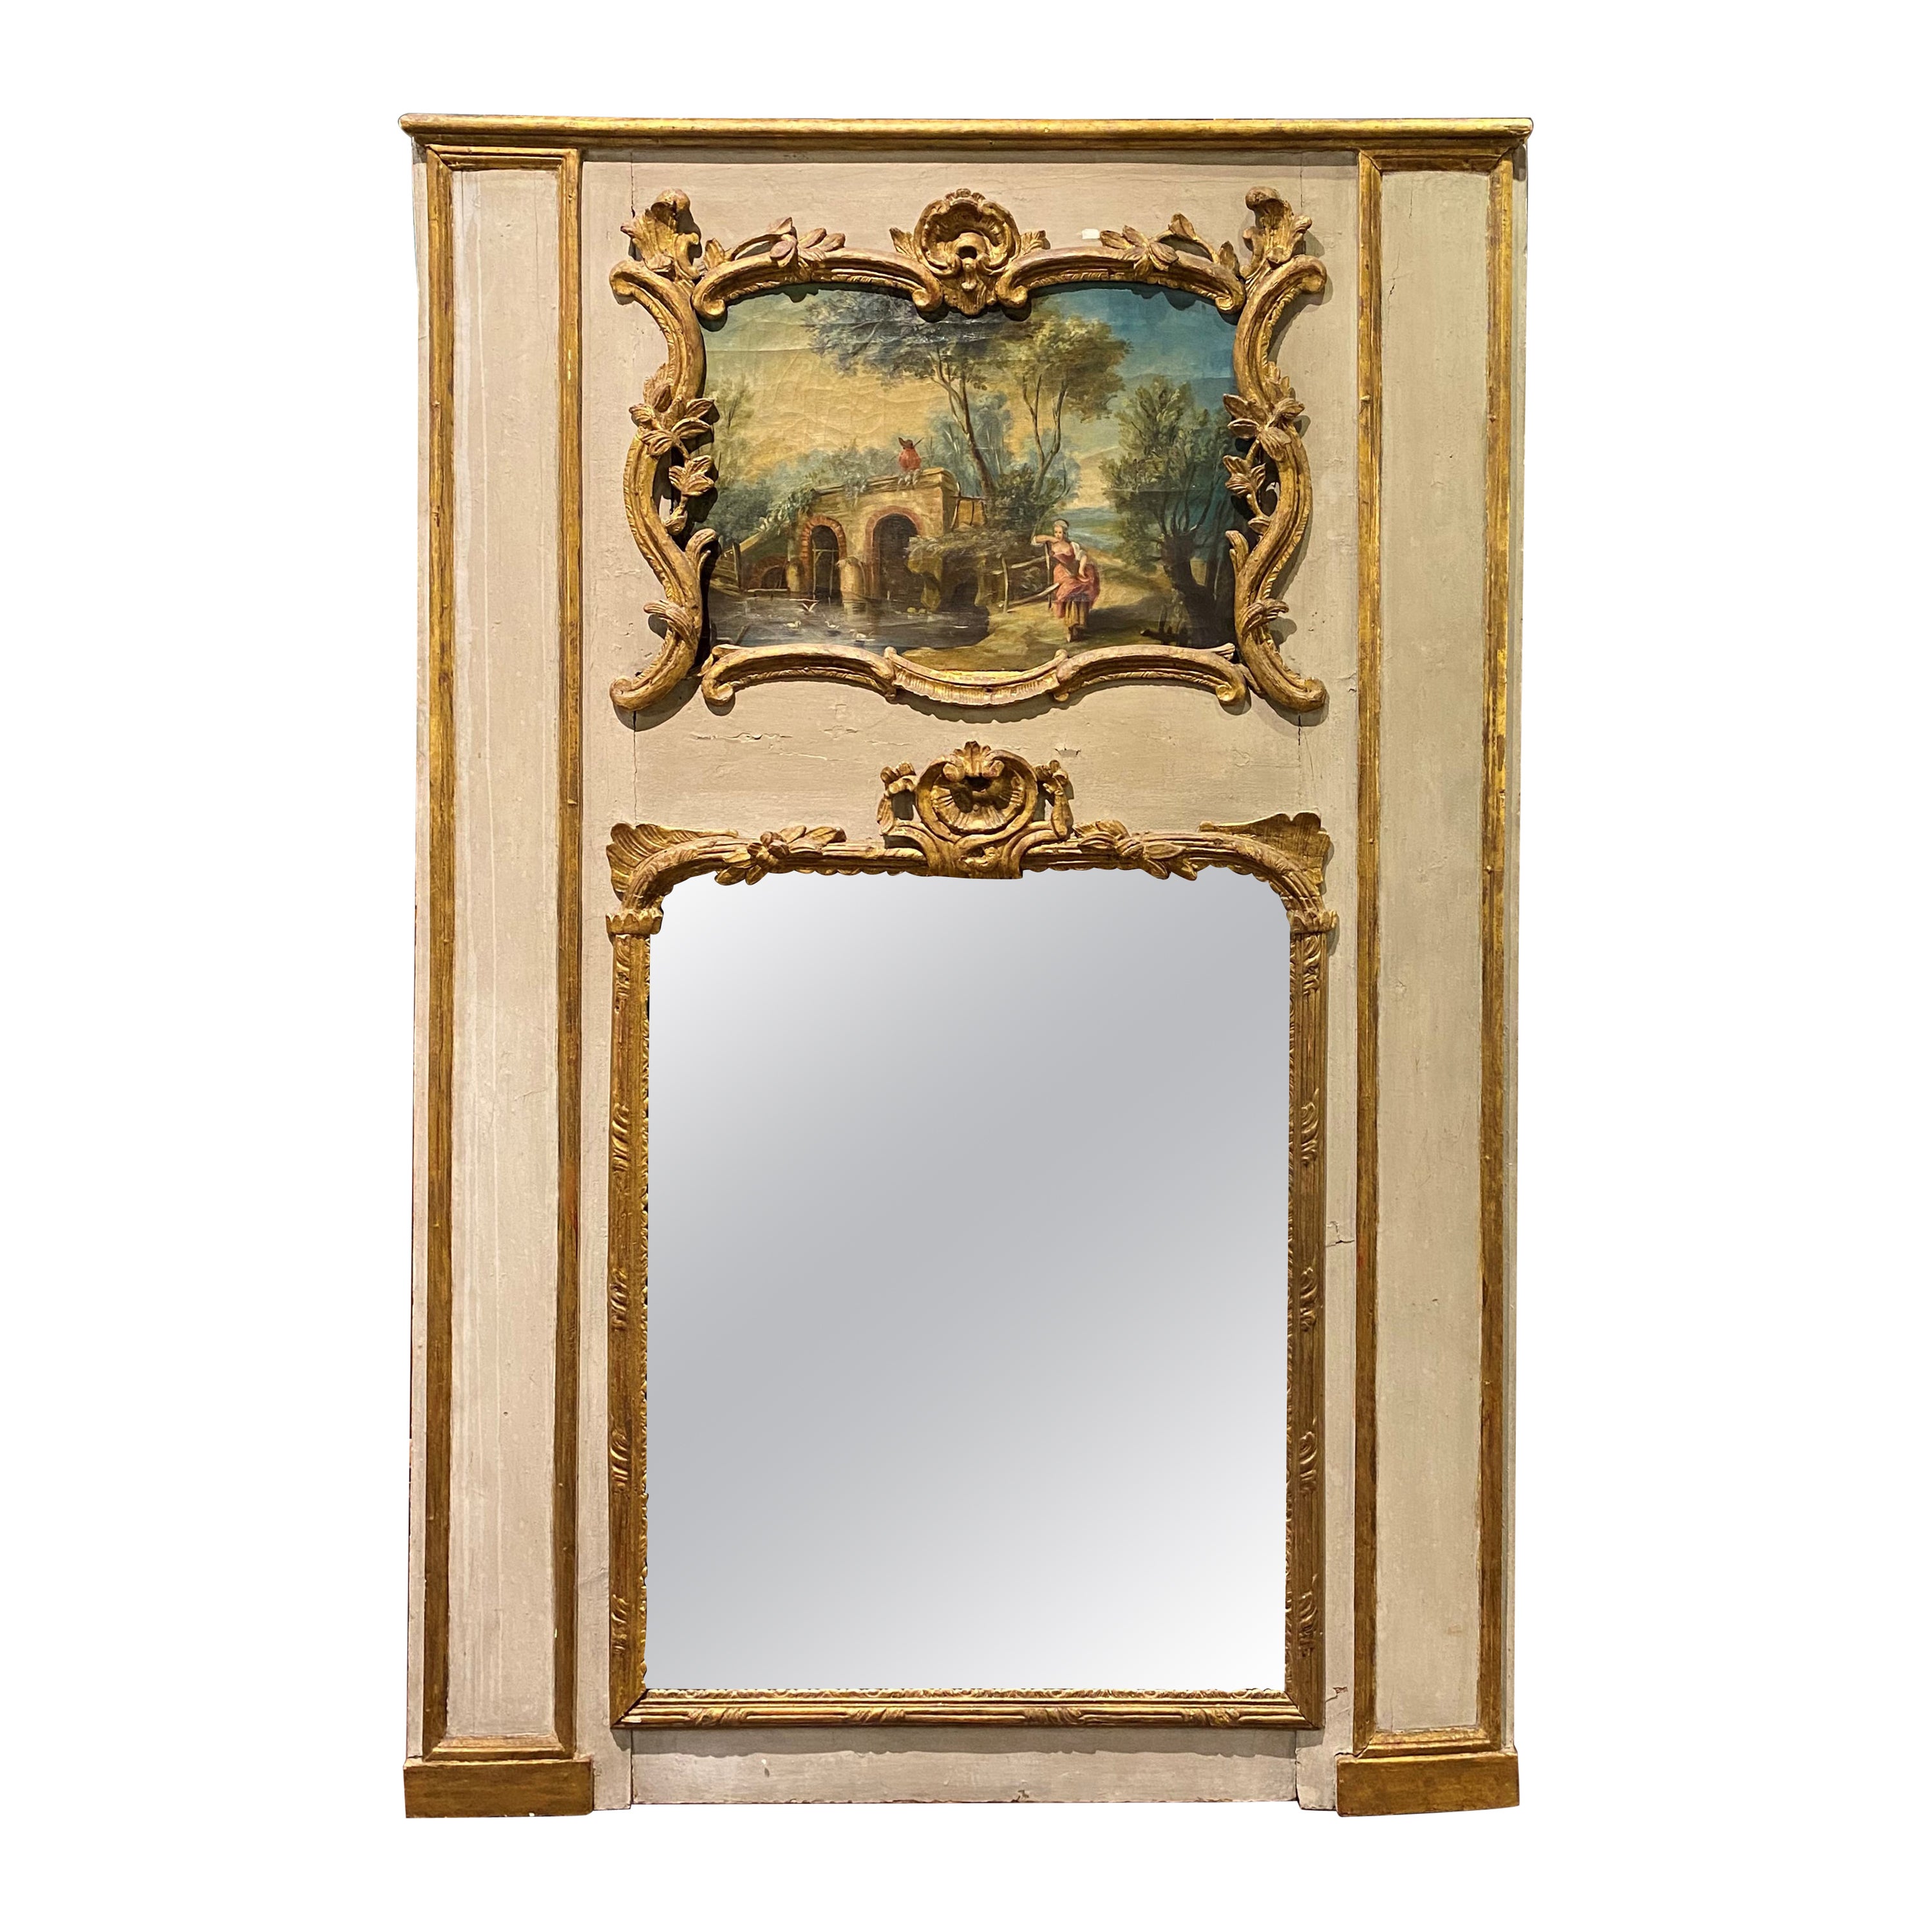 Grand miroir surmonté d'un Trumeau français avec scène de genre